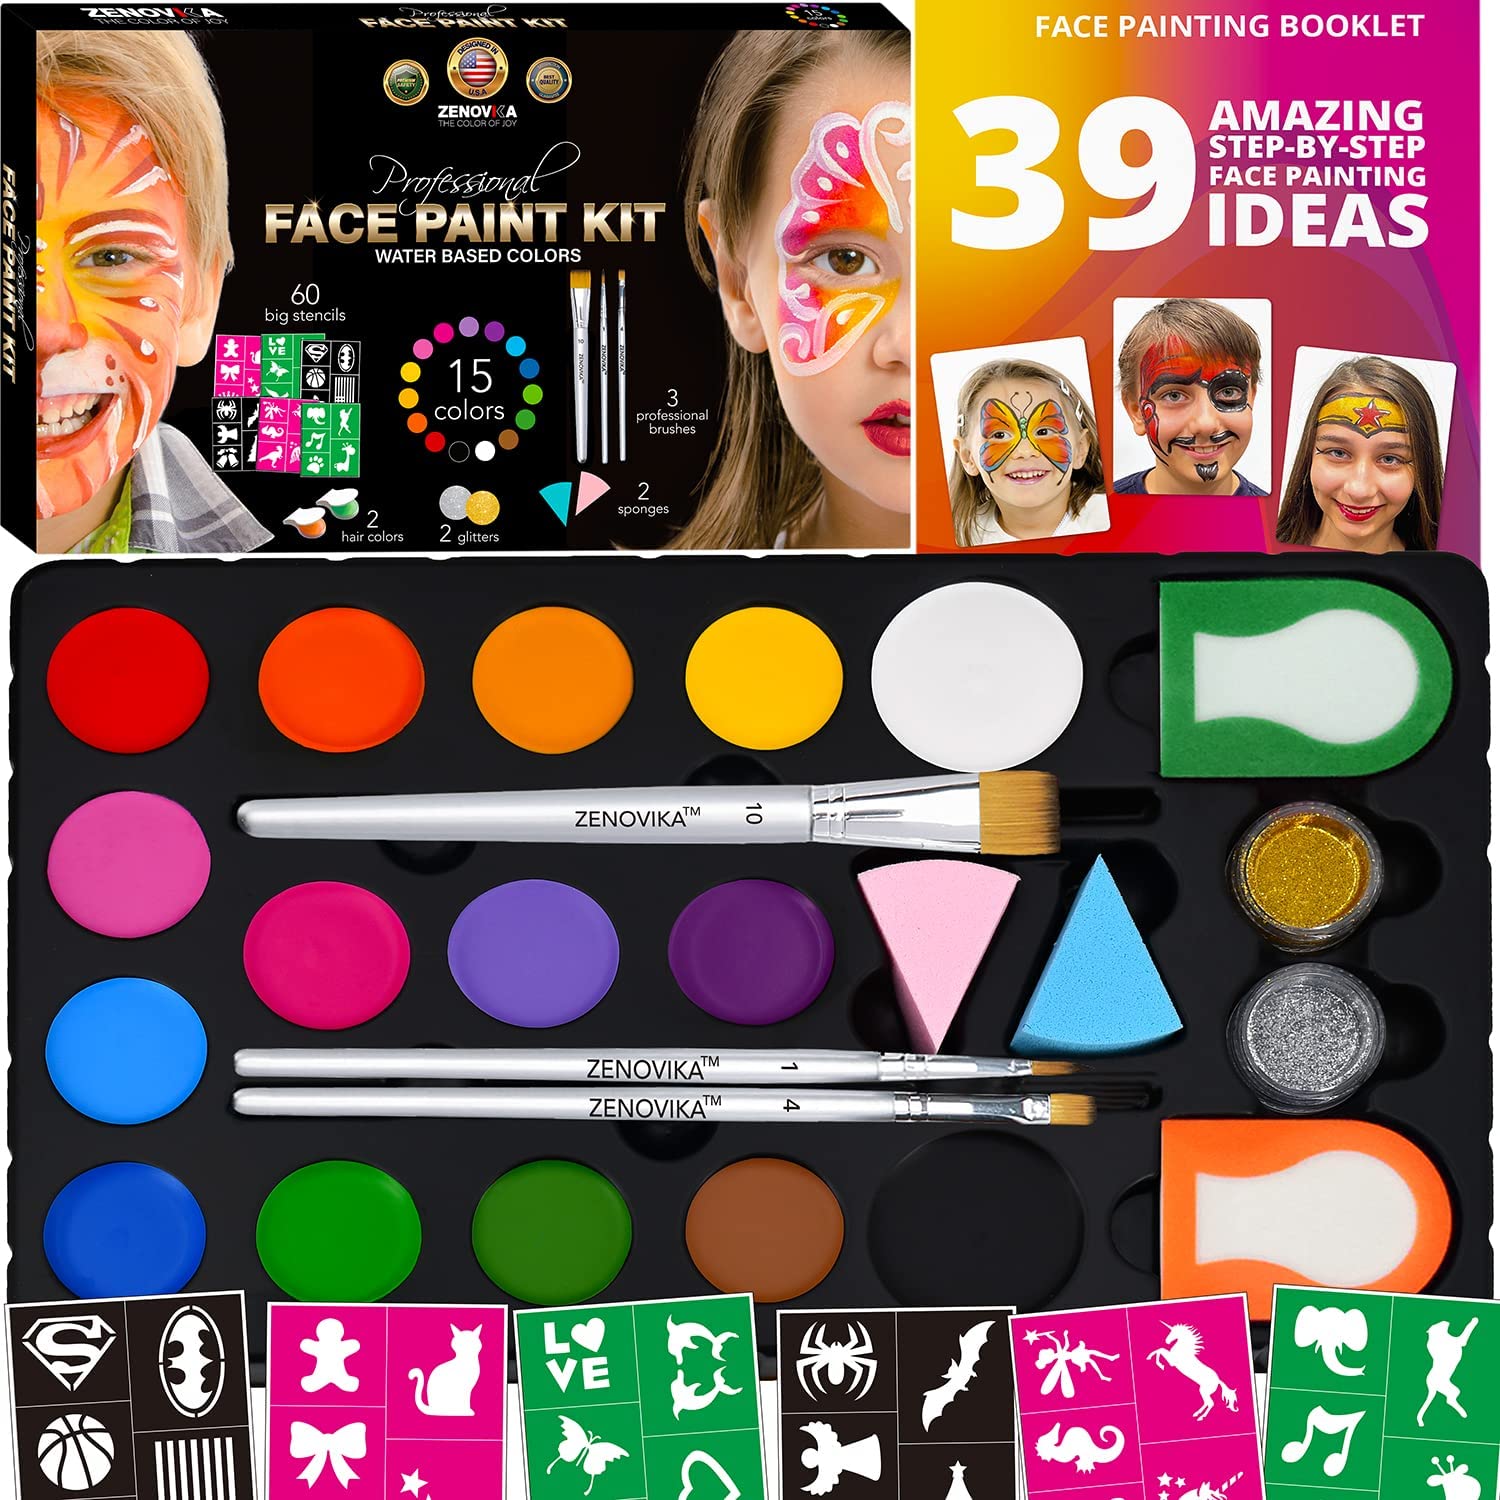 Zenovika Face Paint Kit for Kids - 60 Jumbo Stencils, 15 Large